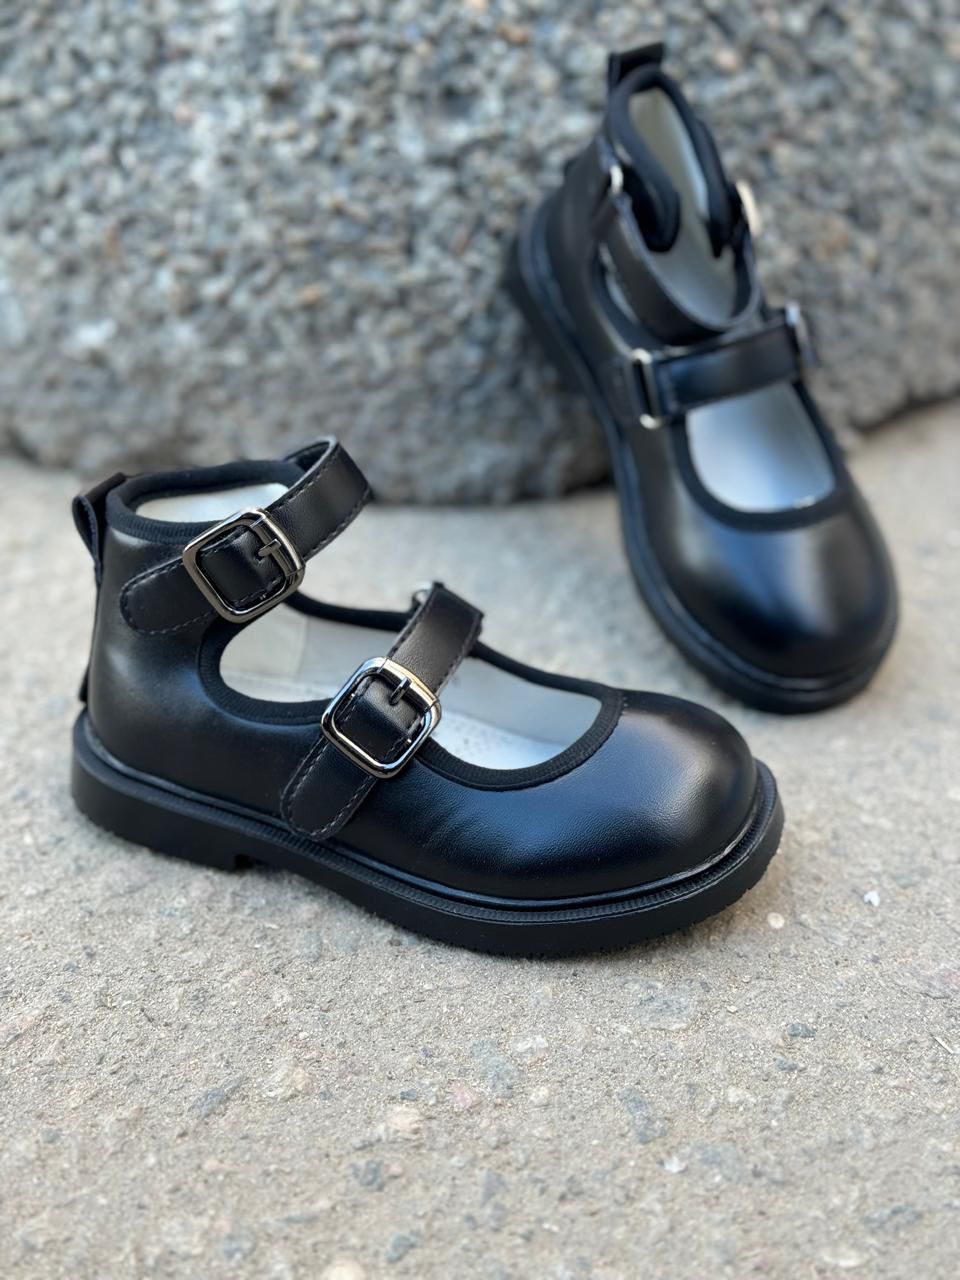 картинка Детские весенние туфли BESSKY SO-242-39 (8 пар в коробе, размер 26-31) от оптового интернет-магазина Shoesopt.by